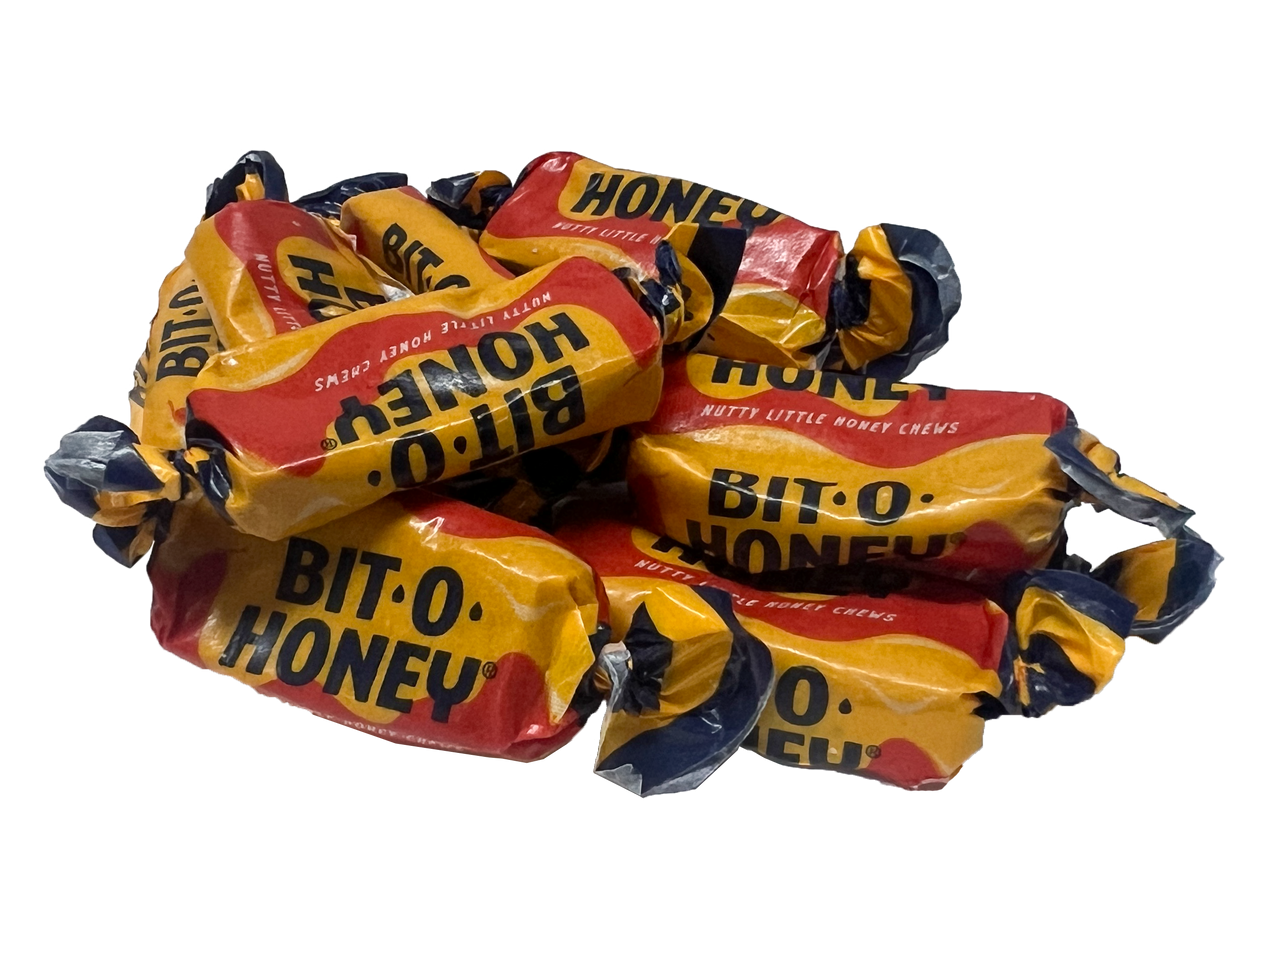 Bit-O-Honey | 9.5 oz. bag | George J. Howe Company